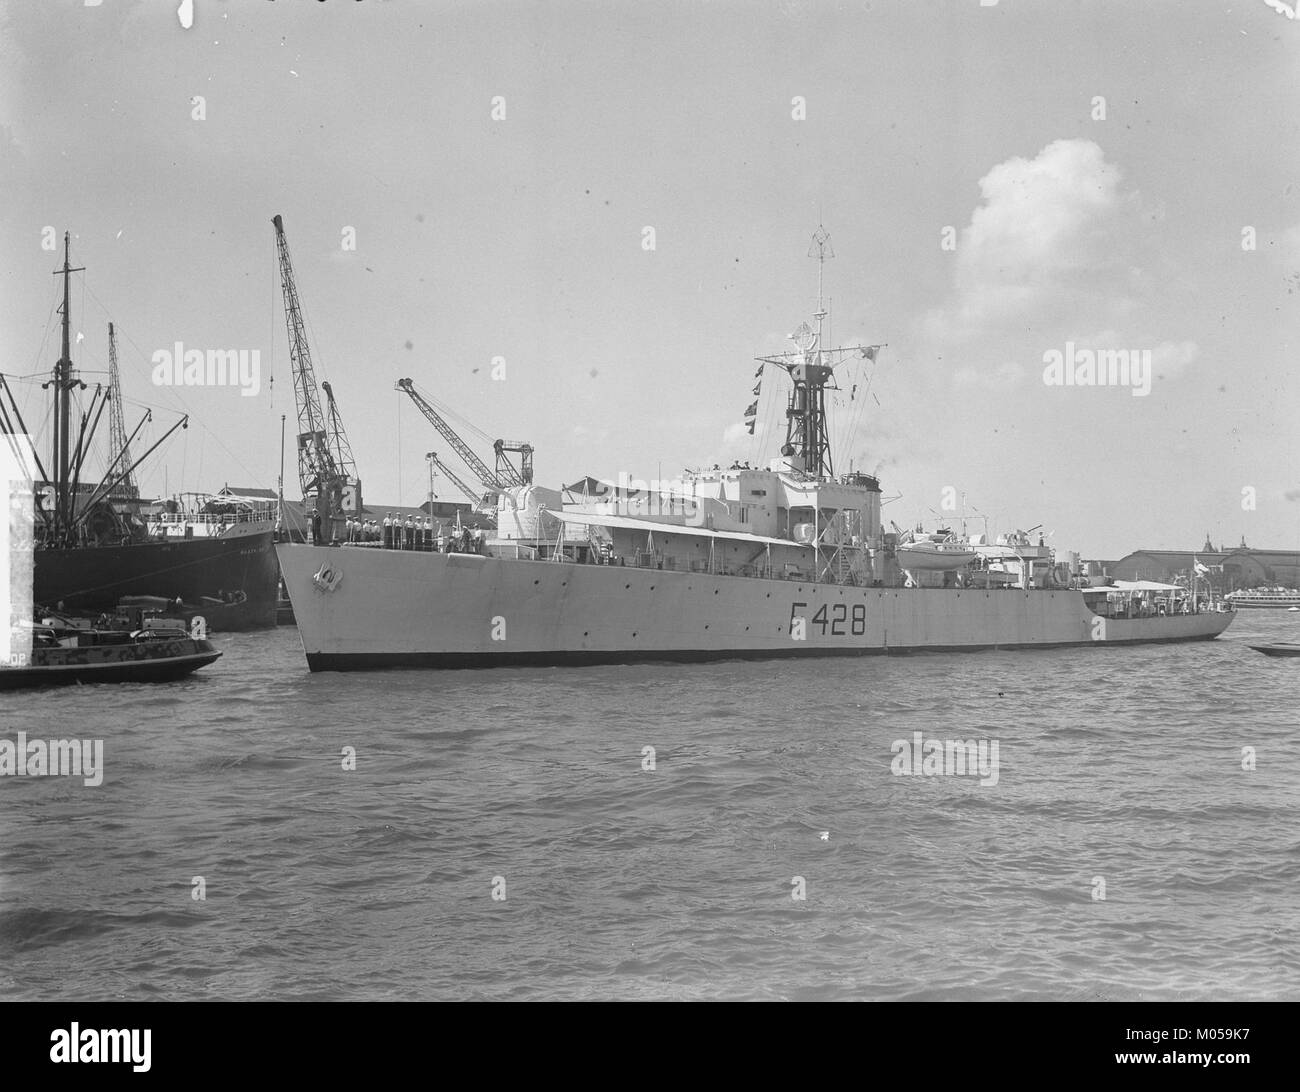 Brits fregat Loch alvie vooruit, Bestanddeelnr 904-0761 Stock Photo